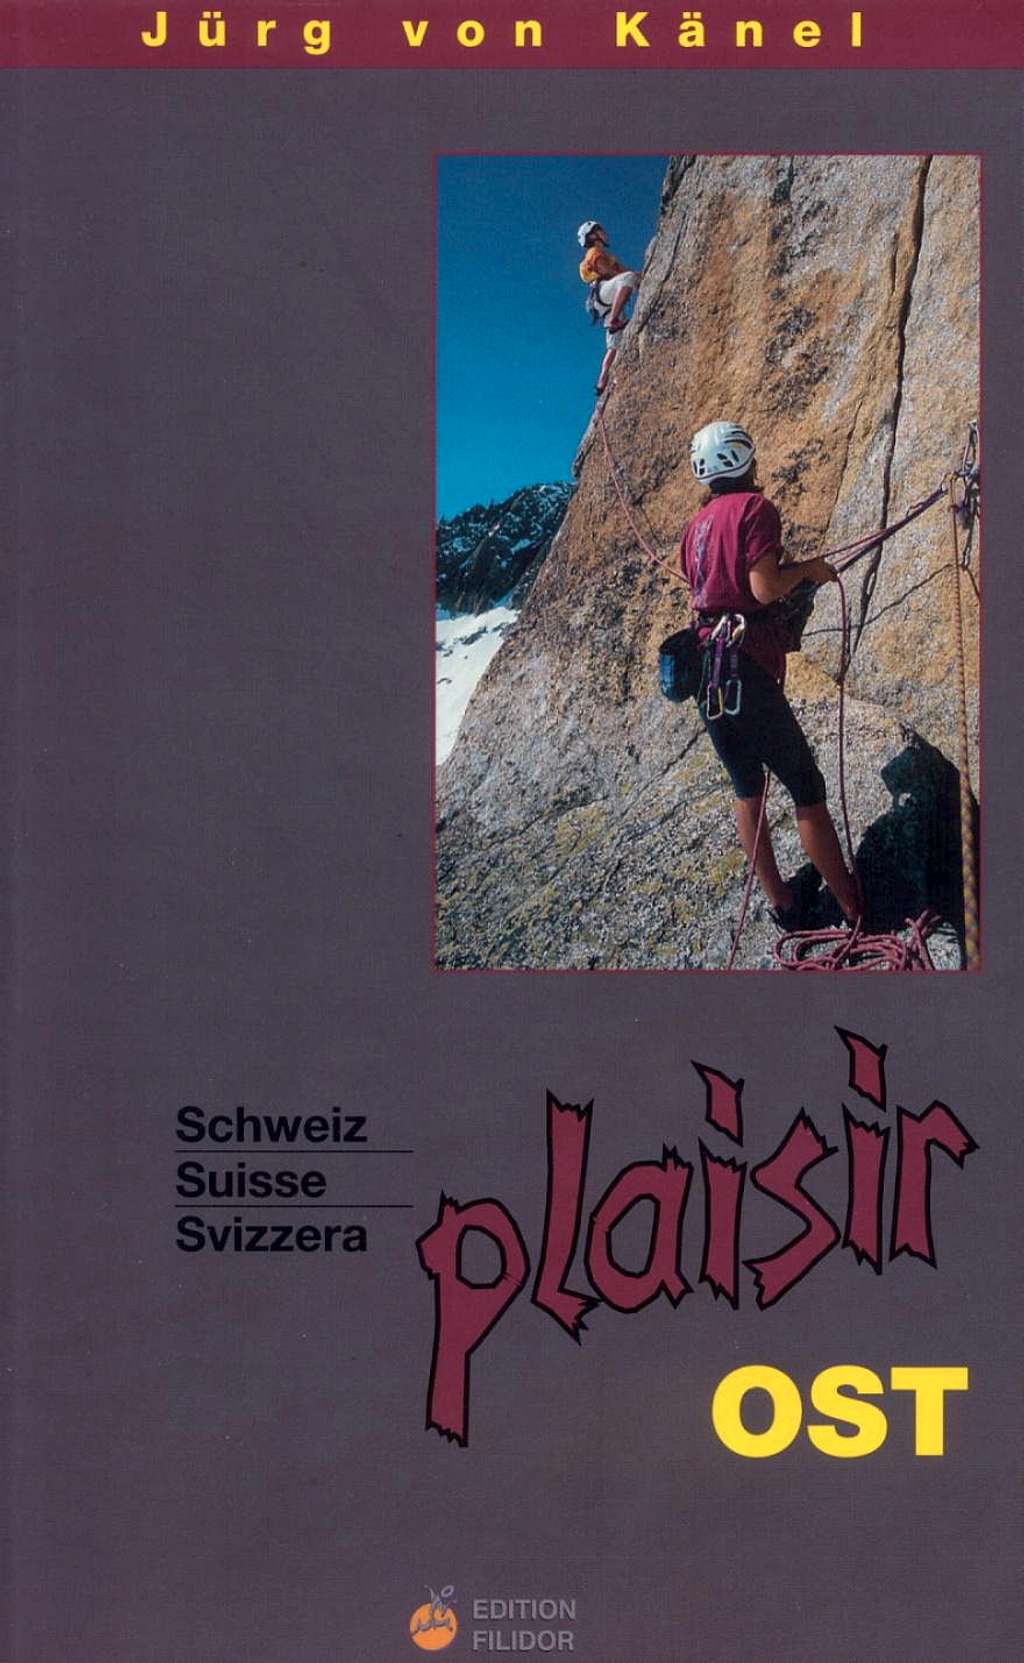 Schweiz plaisir Ost Guidebook